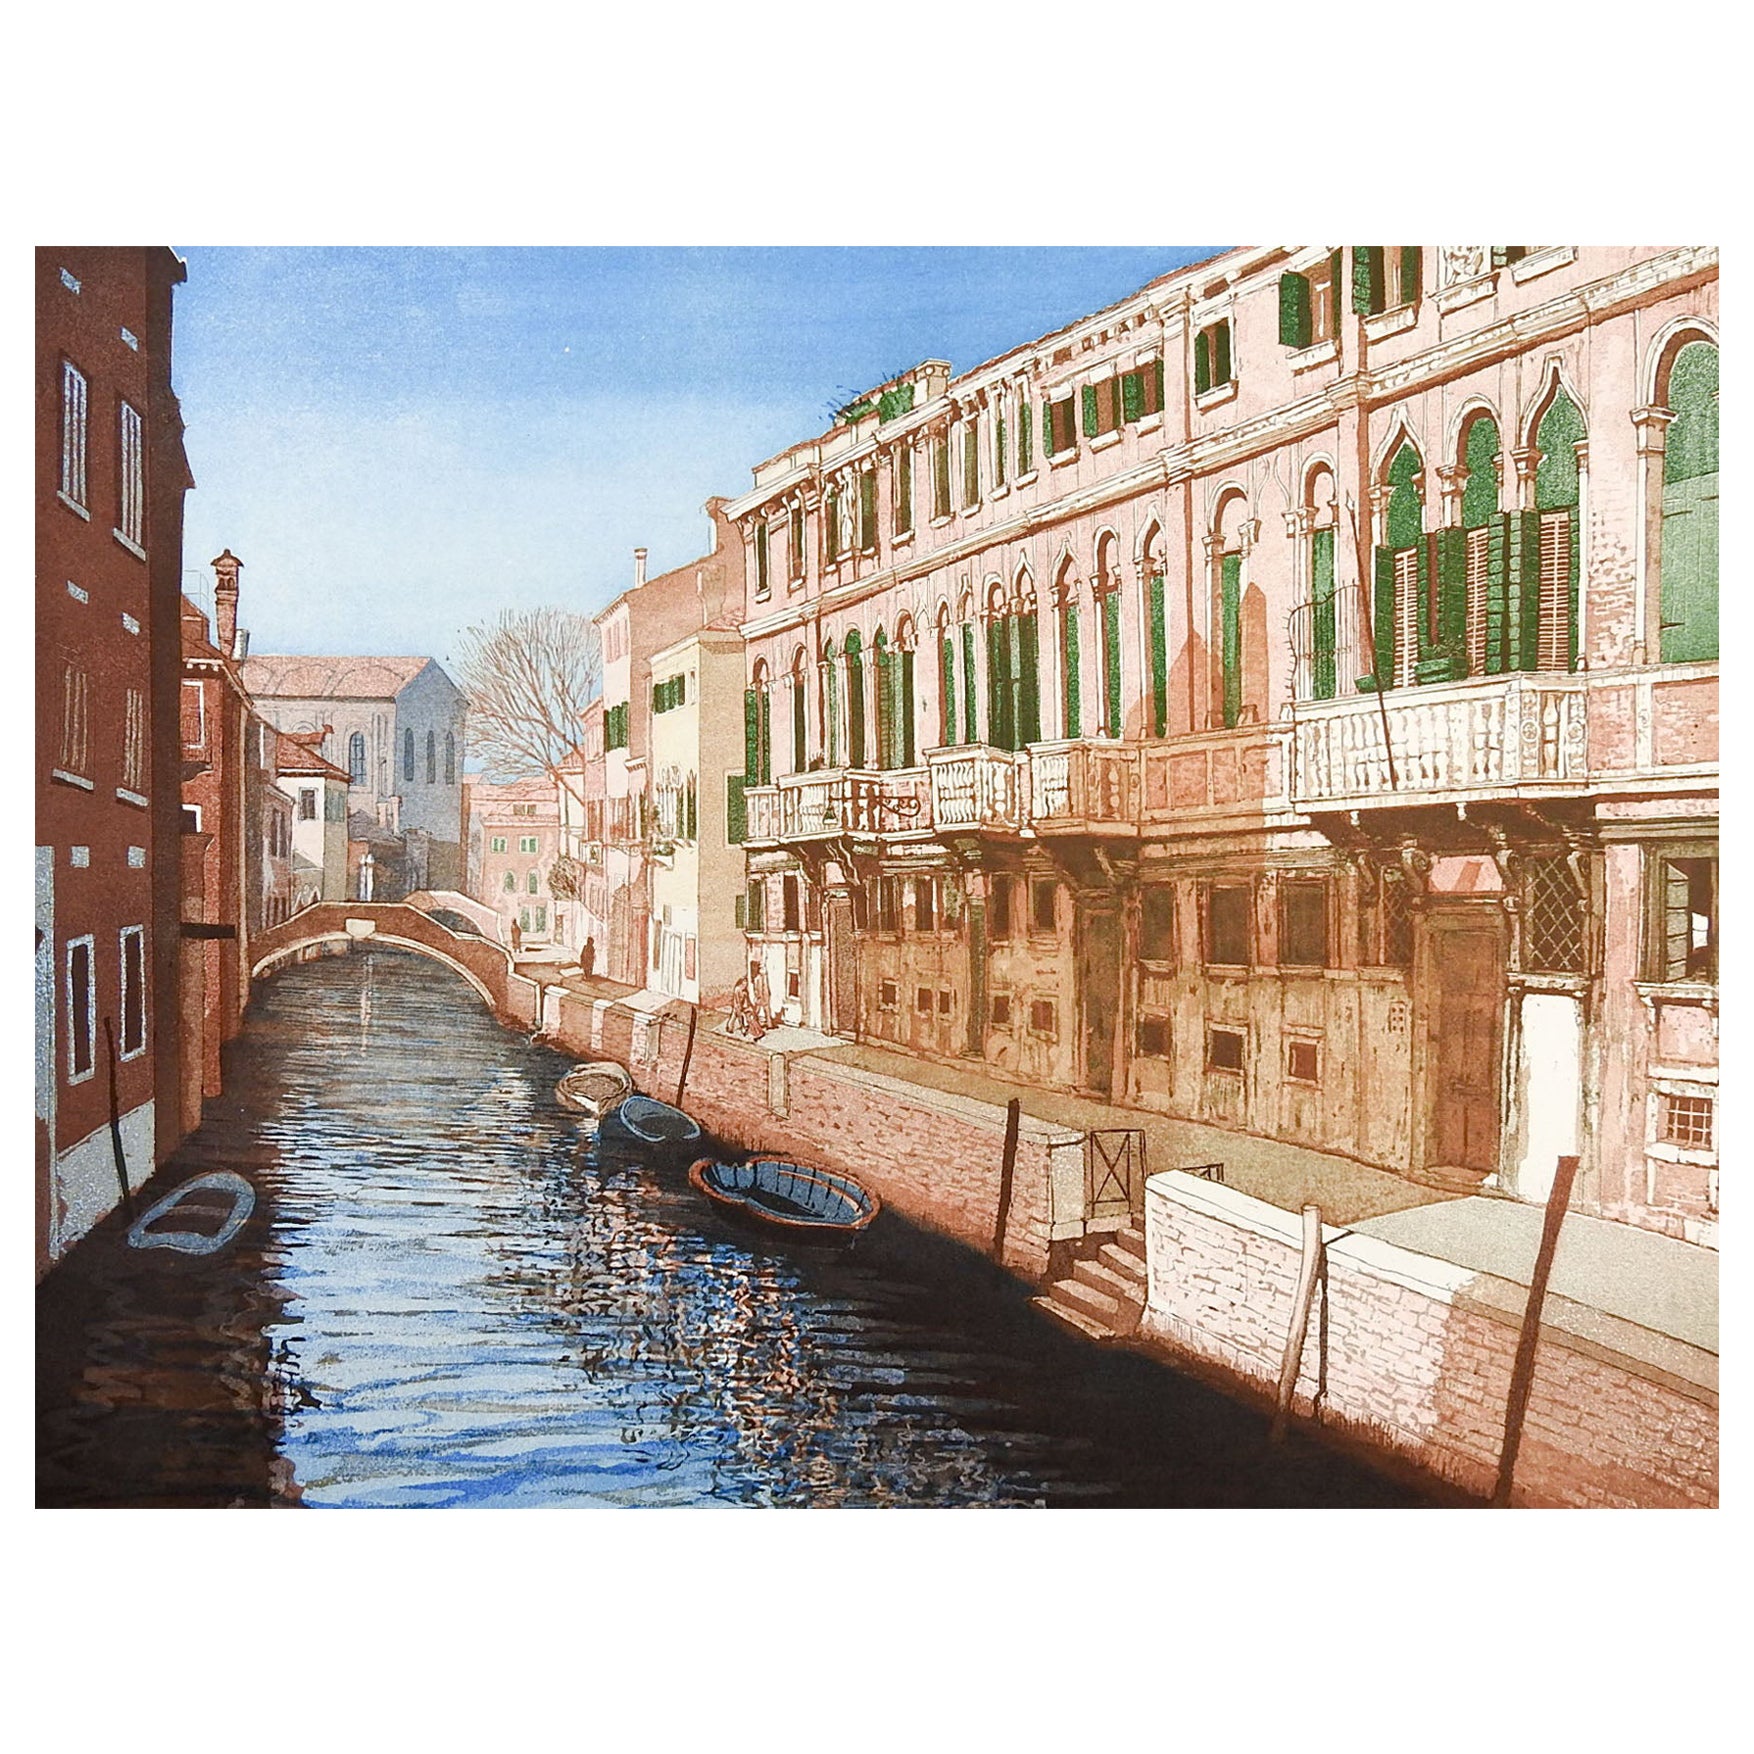 Fondamenta Zen Canal Venise Italie gravure